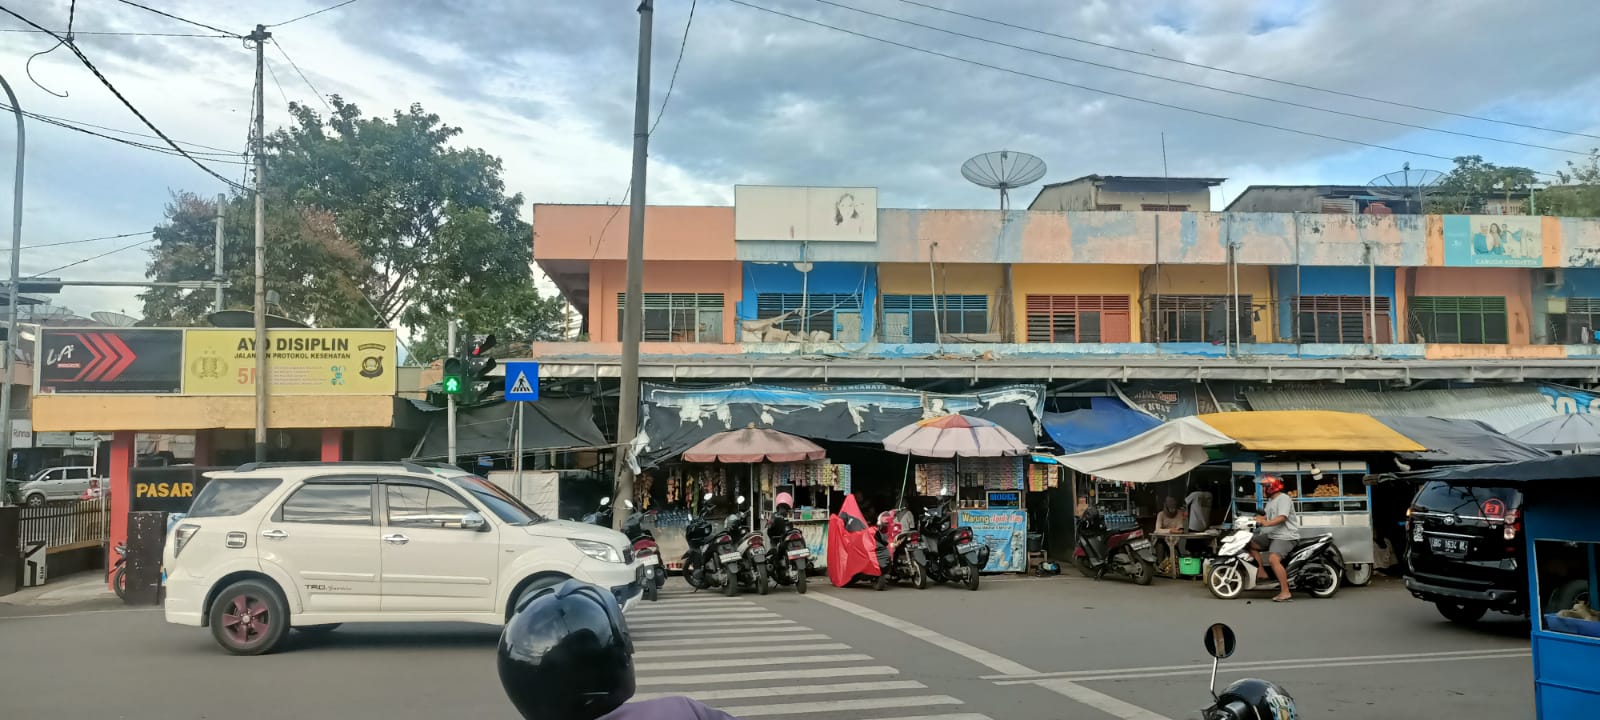 Nasib Pasar Lematang Lahat di Tengah Gempuran Online Shop, Kian Sepi, Berharap Rehab Gedung dari Pemerintah